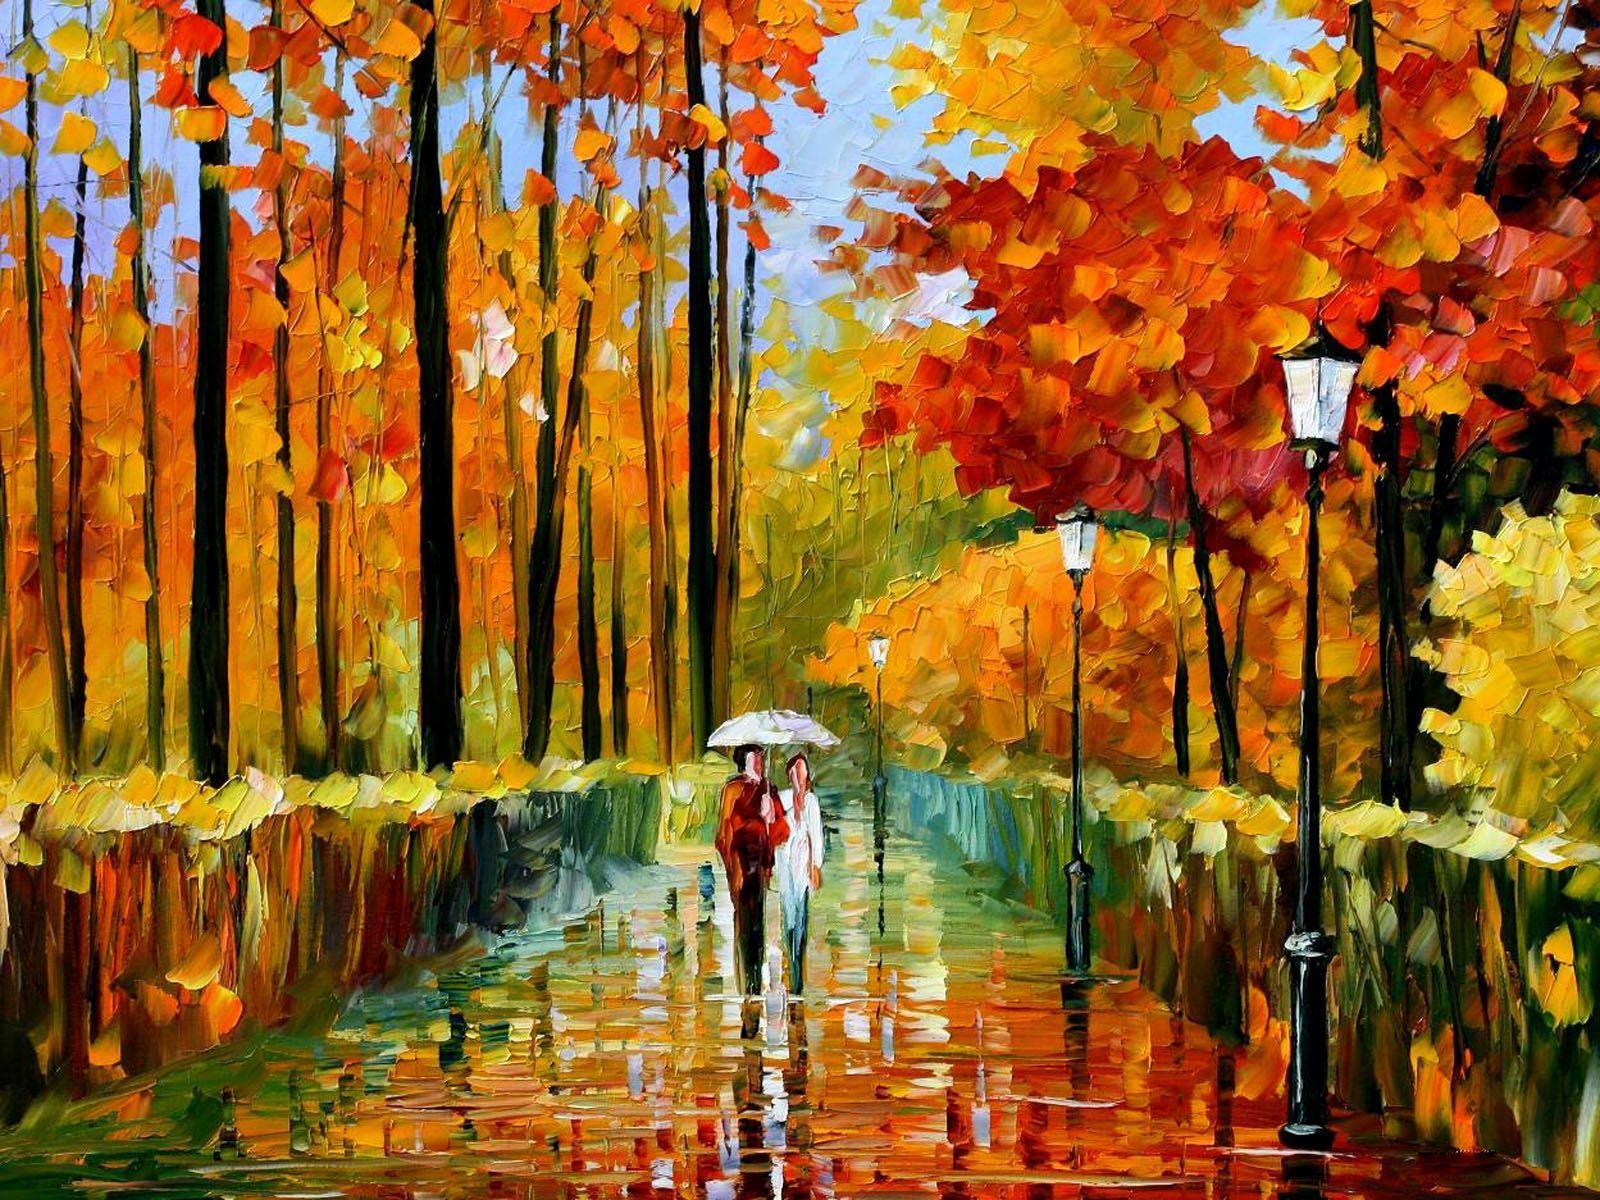 Autumn Rain painting. wallpaper: Autumn Oil Paintings. Art